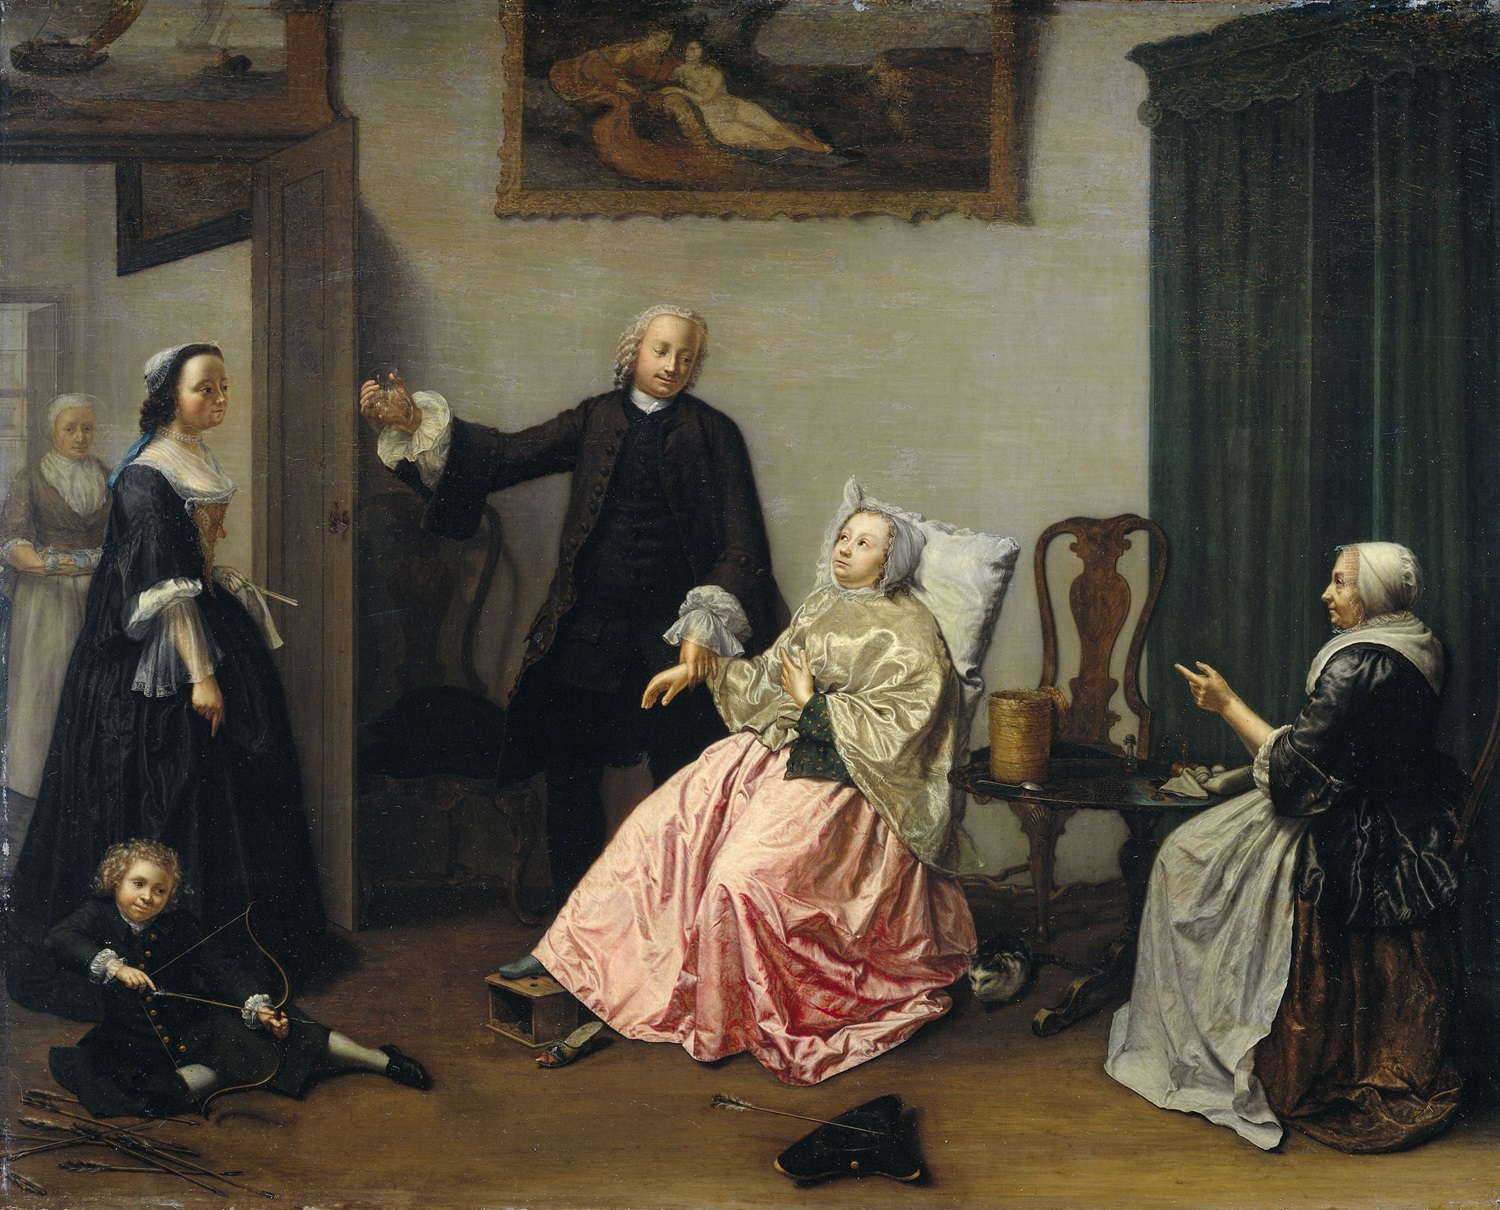 Des parcours à révéler : sur les traces d’artistes néerlandaises du XVIIIe siècle - AWARE